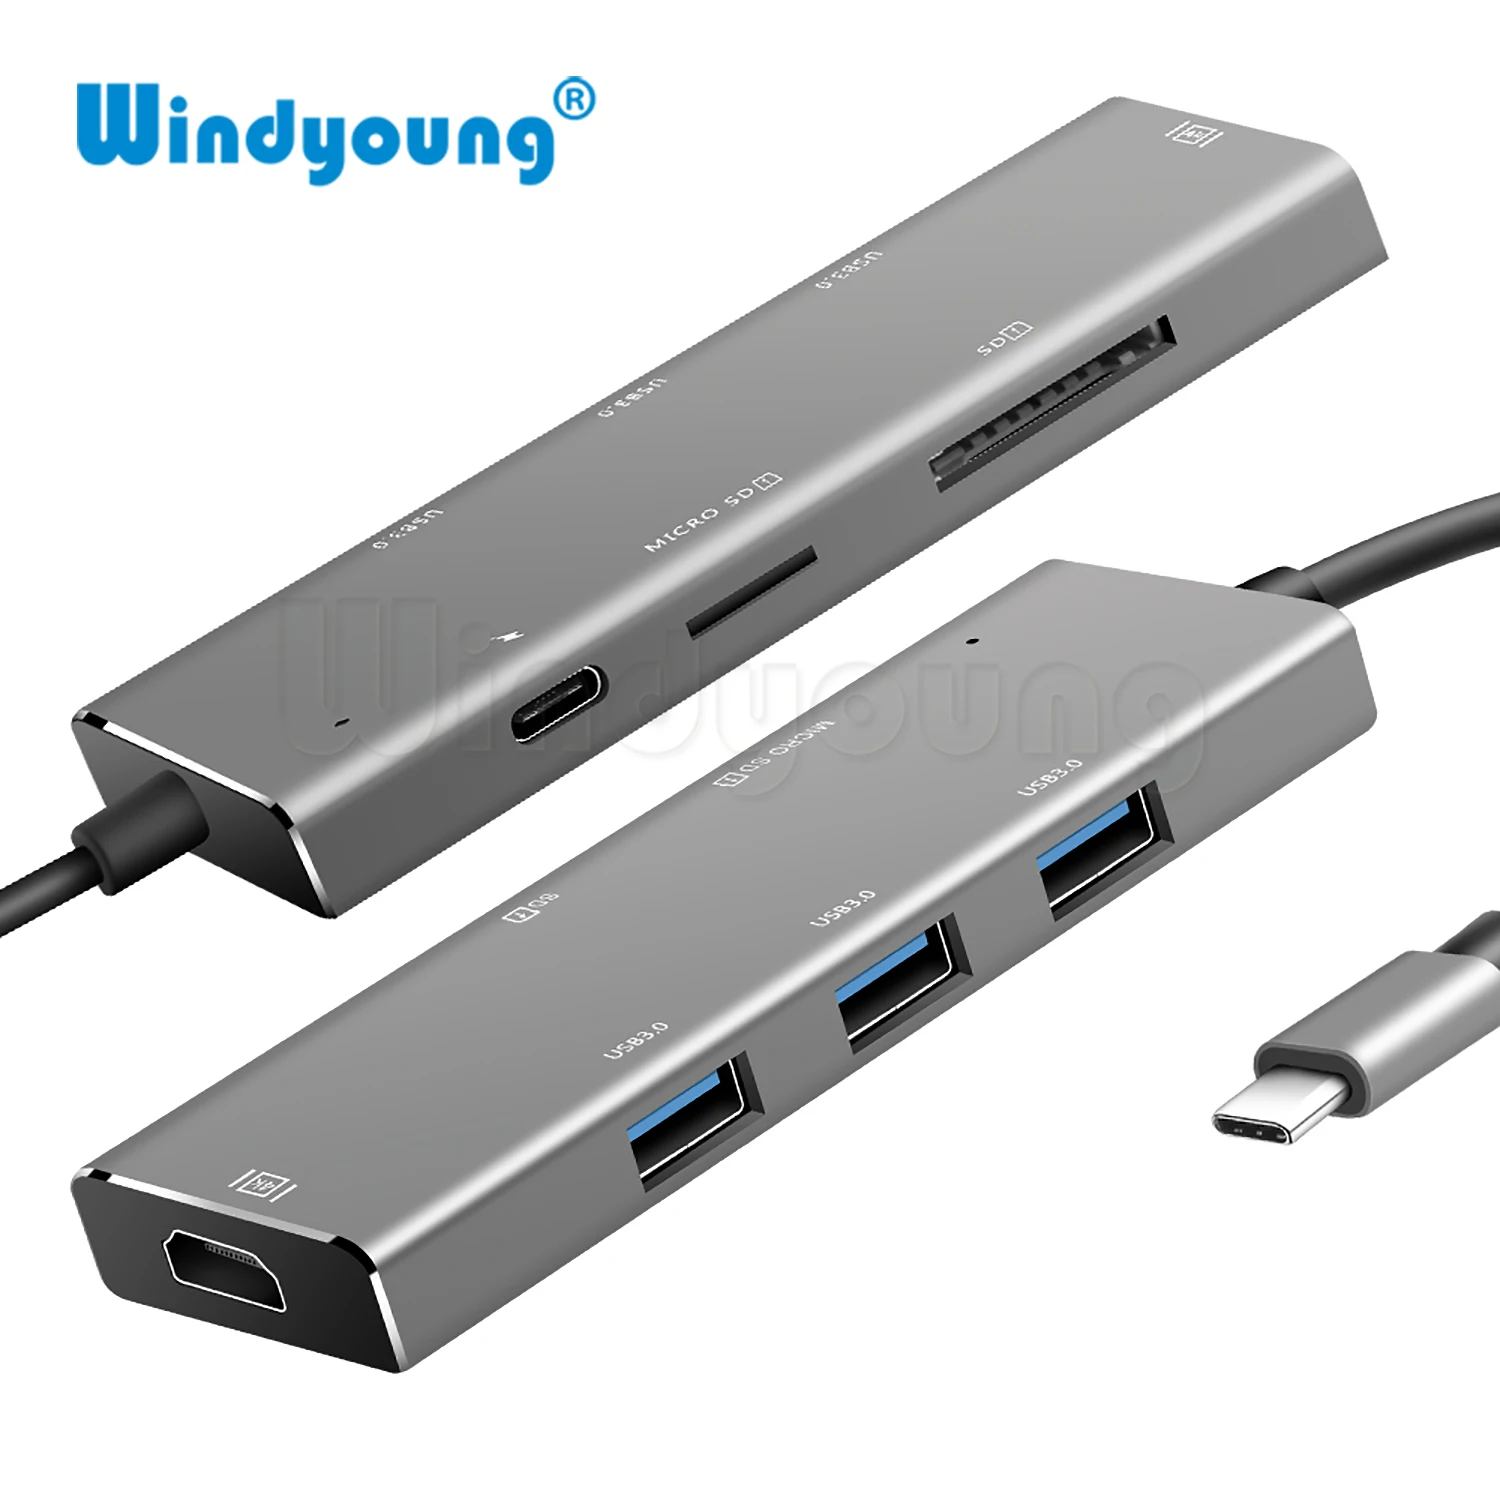 USB-концентратор C/HDMI, поддержка Samsung Dex Mode для S8/S9 с разъемом для чтения PD SD/TF, 3 порта USB 3,0 для Macbook Pro/Air 2018 от AliExpress RU&CIS NEW